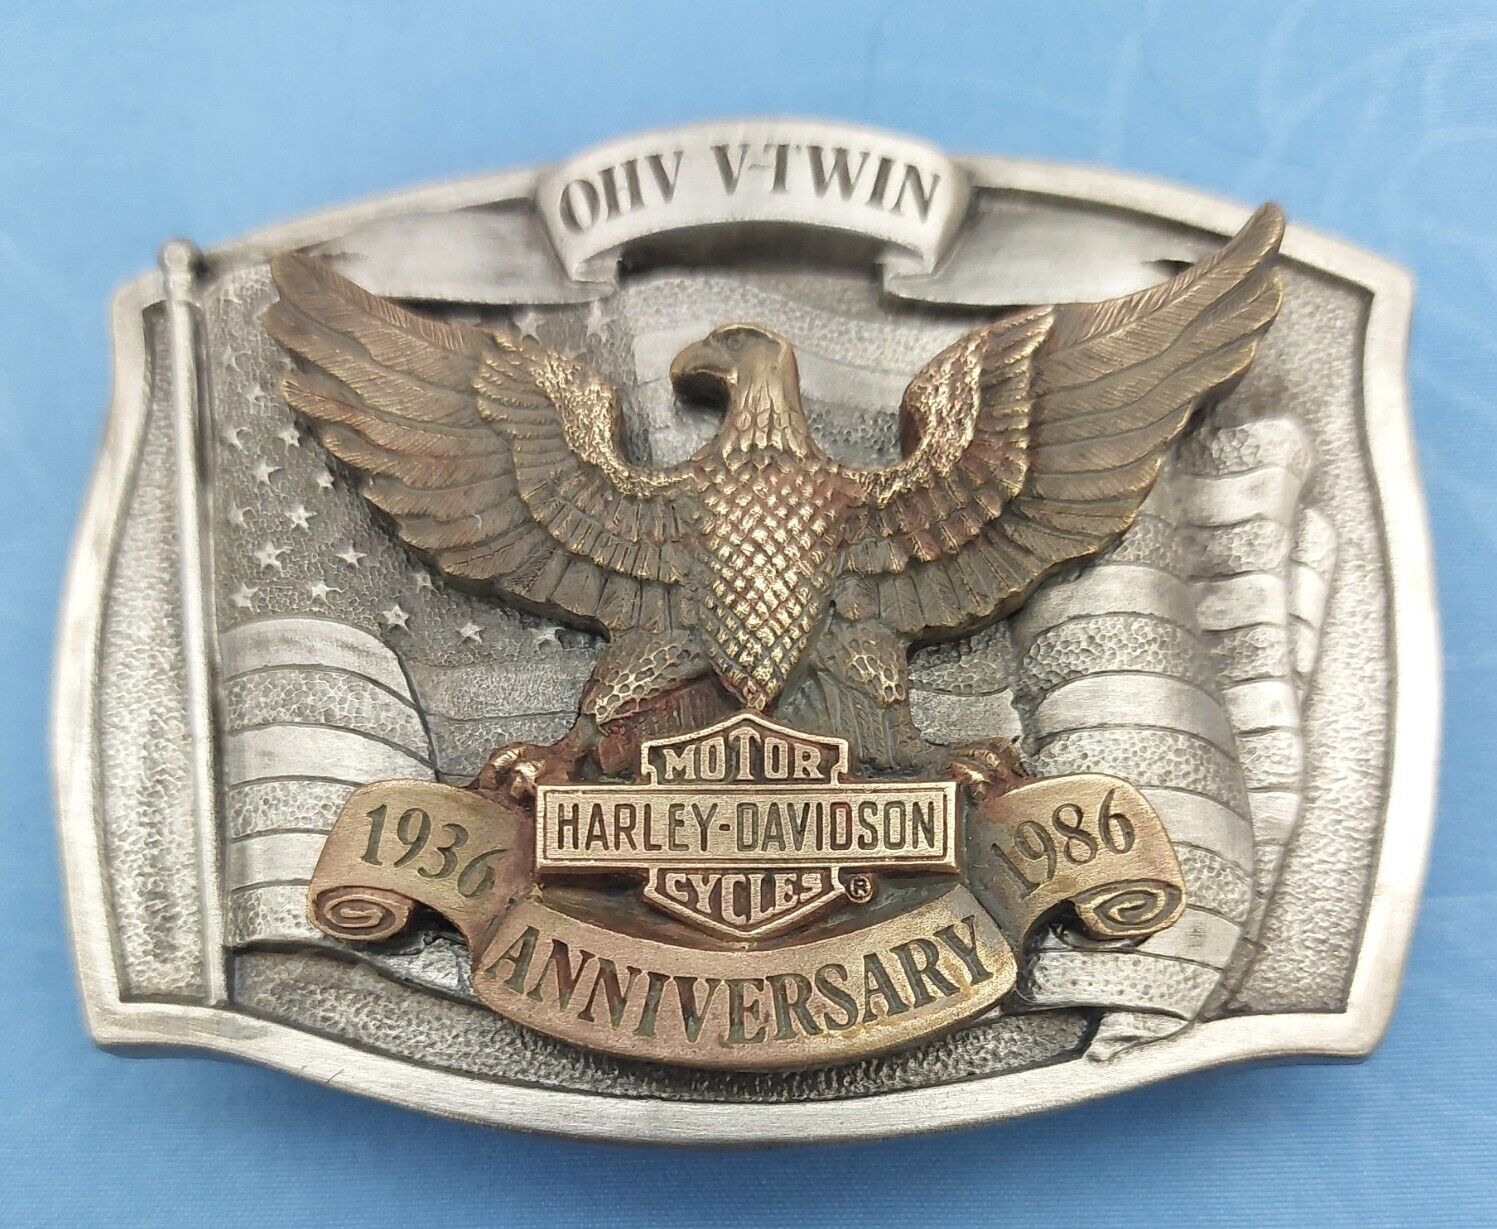 Harley Davidson 1986 50th Ann. OHV V-Twin Engine Belt Buckle Ltd Ed Of Only 3000